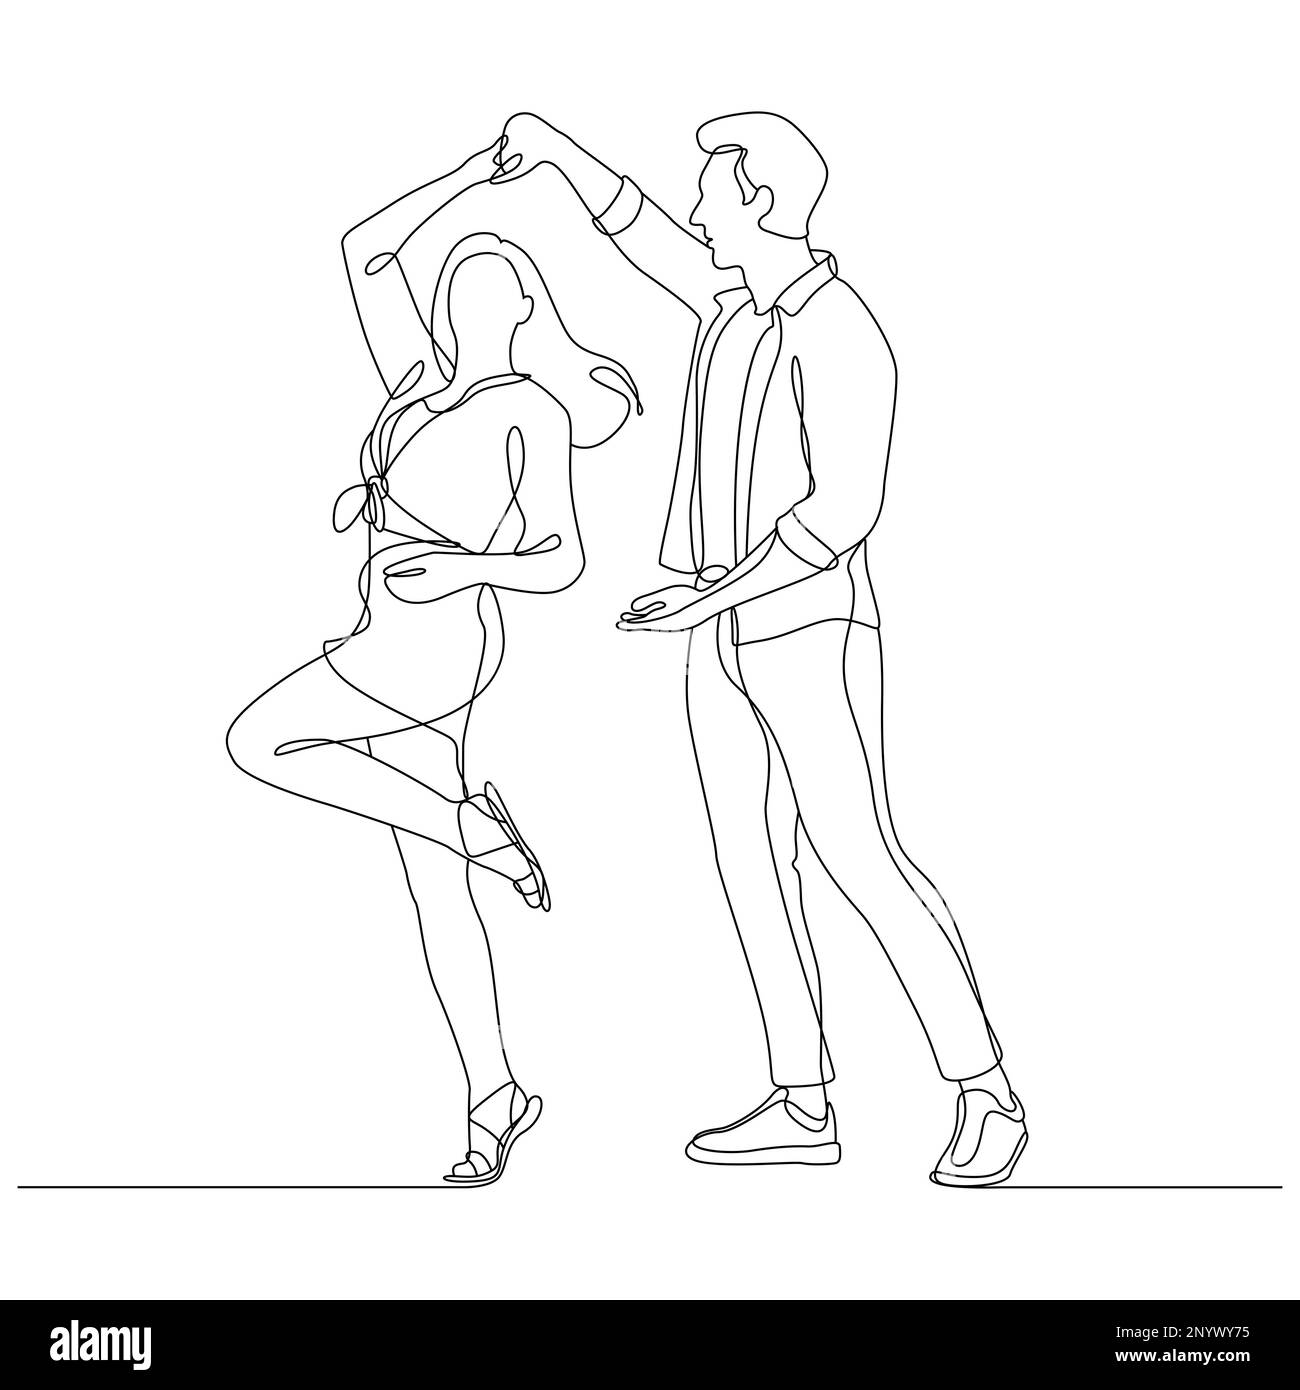 Ein Paar tanzt, Umriss auf weißem Hintergrund. Vektordarstellung Stockfoto